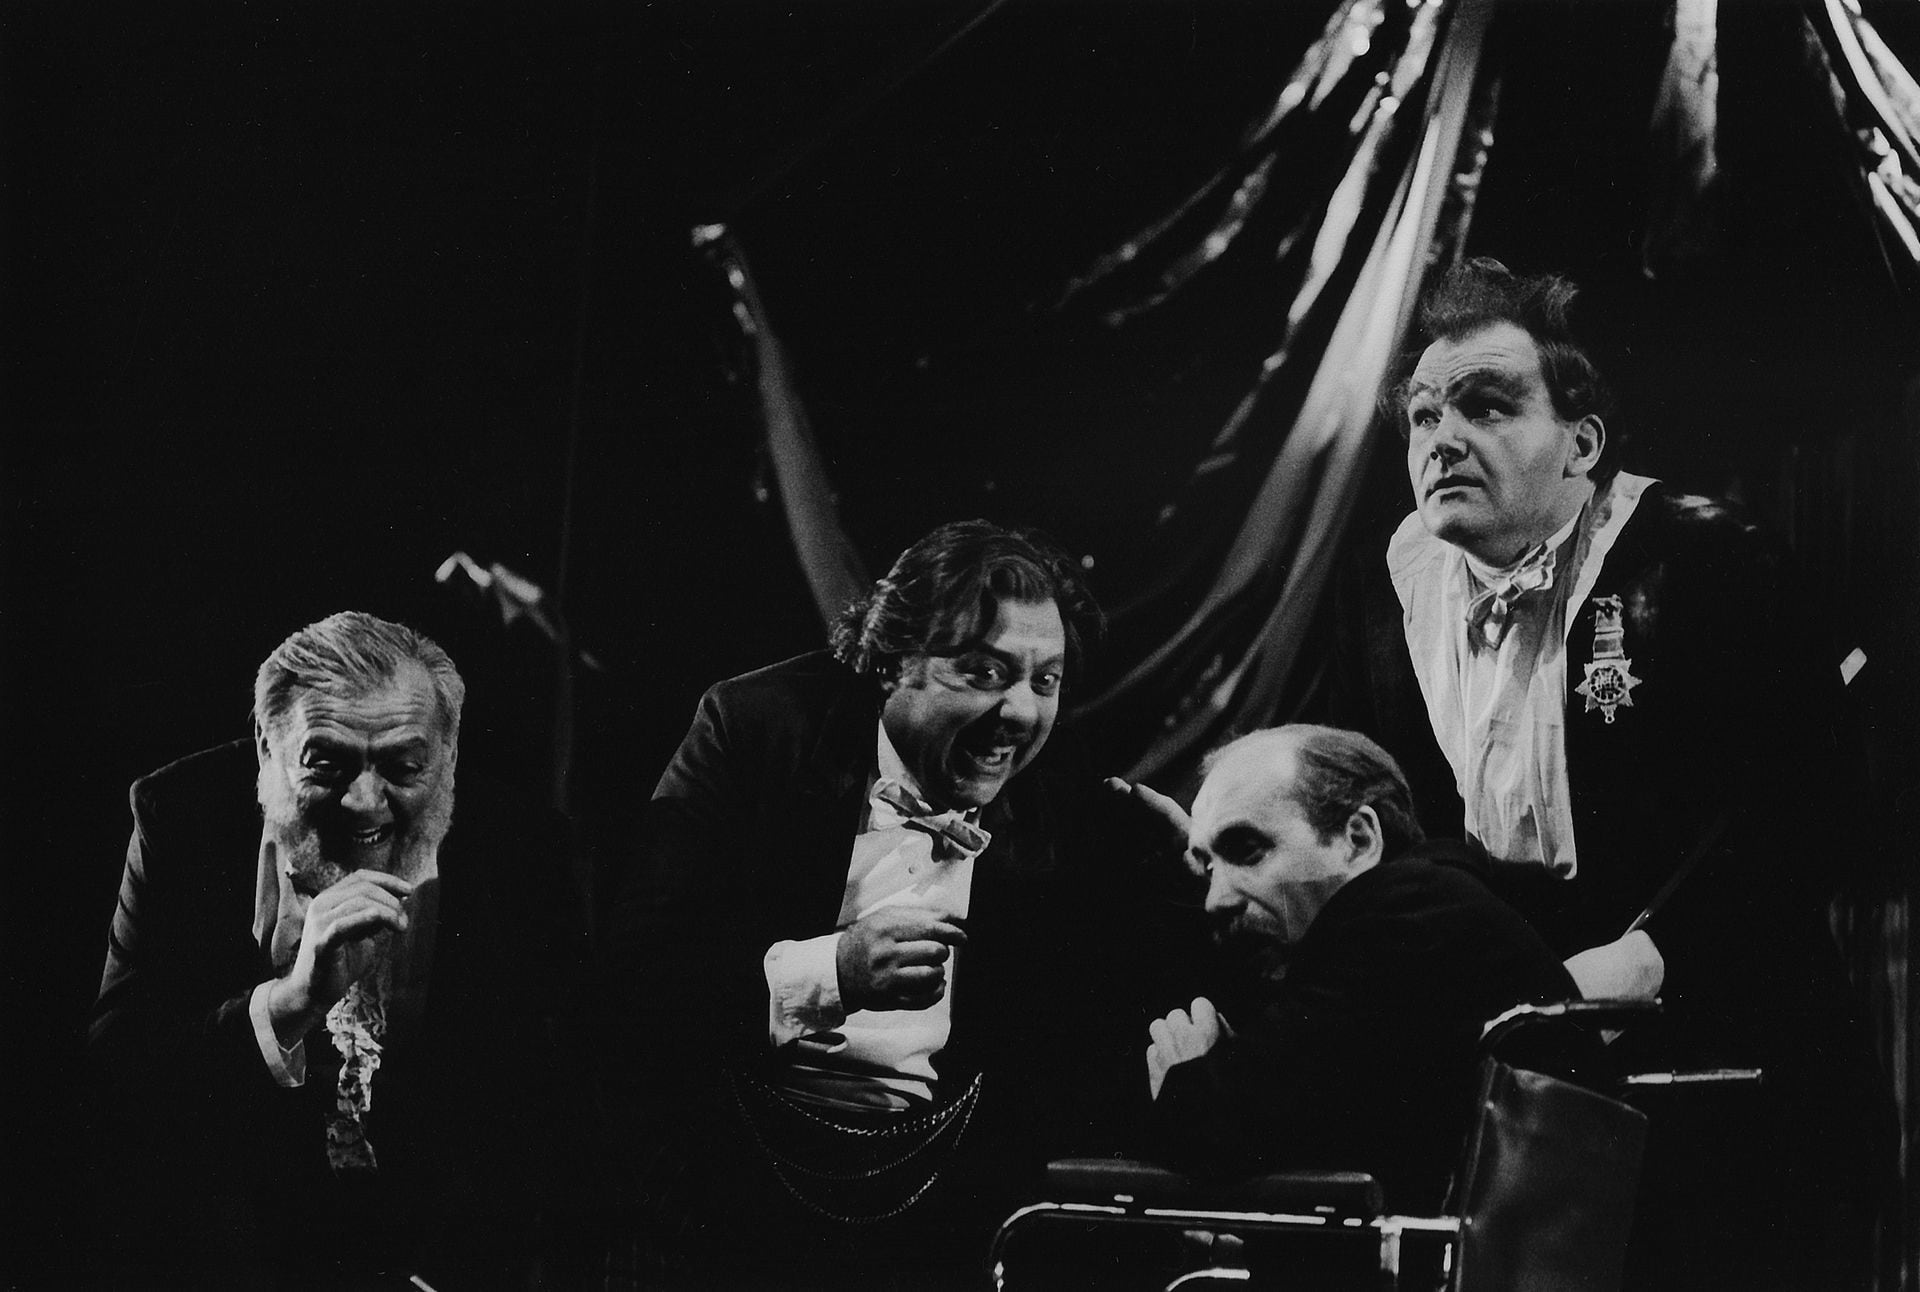 Concierto de aniversario, de Eduardo Rovner, dirigida por Sergio Renán, con Aldo Braga, Juan Manuel Tenuta, Roberto Catarineu y Marcos Wonsky